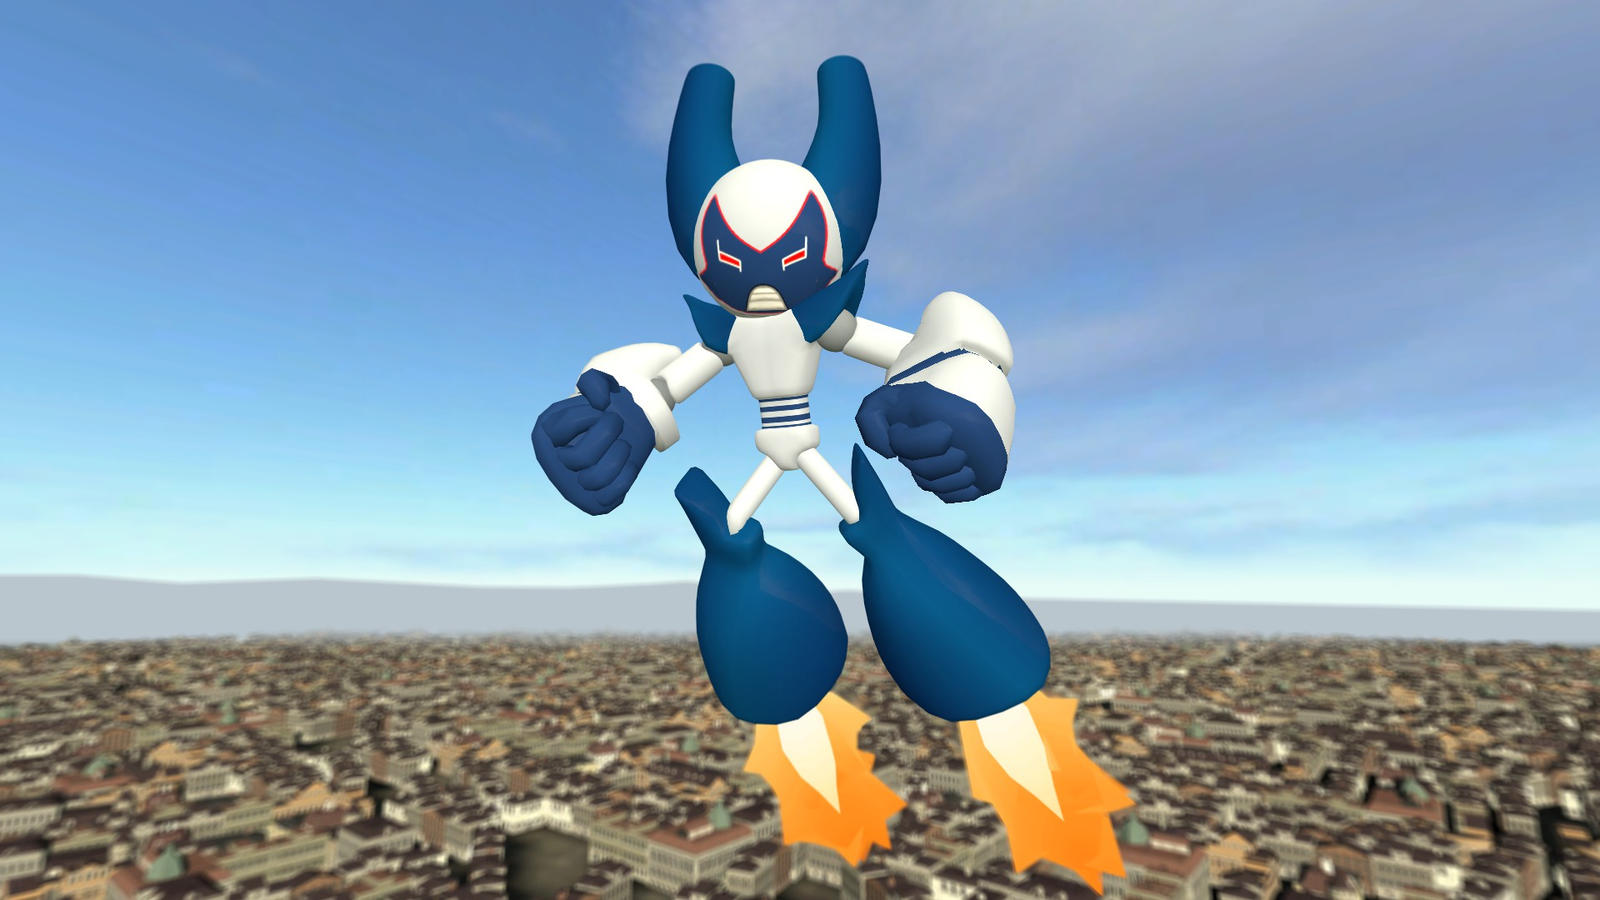 Robotoboy- Superactivated - Robotboy - Pin